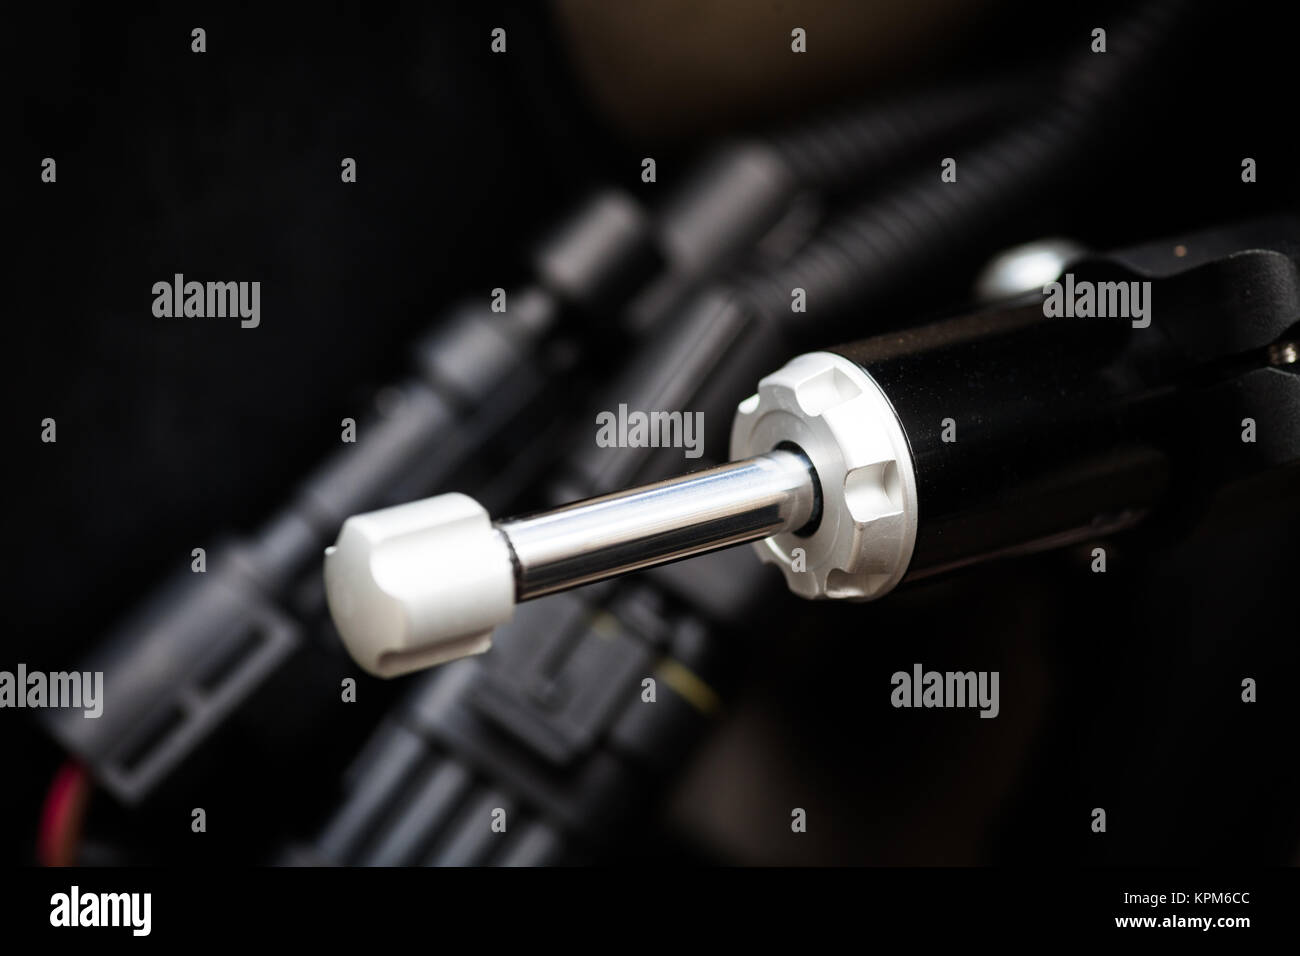 Motorcycle steering damper Stock Photo